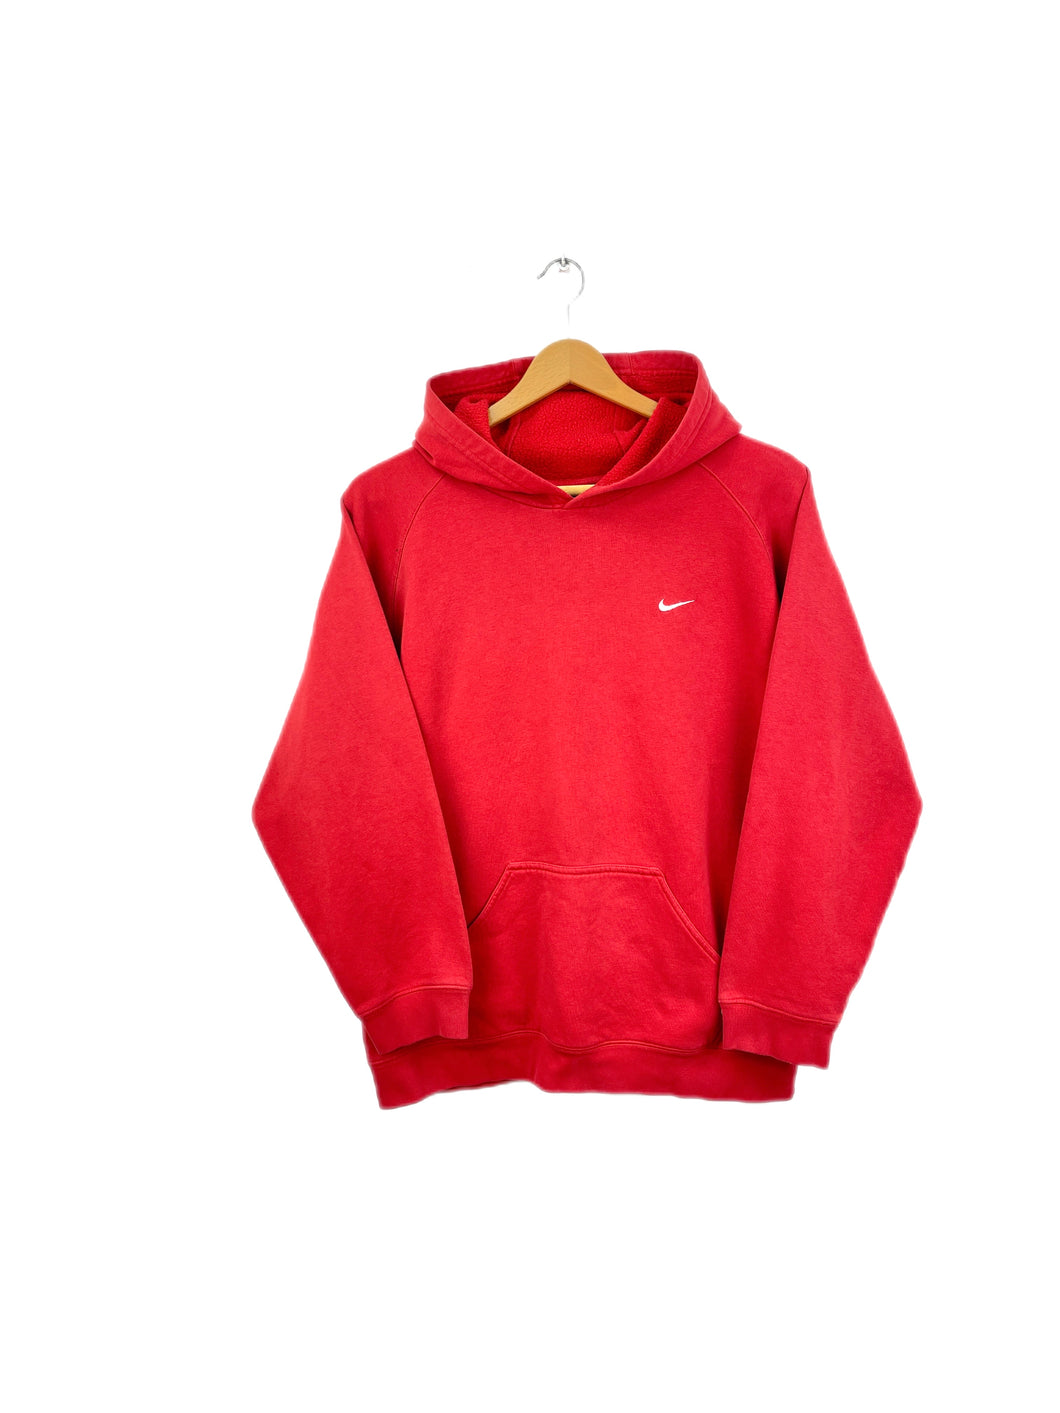 Nike Sweatshirt - Small